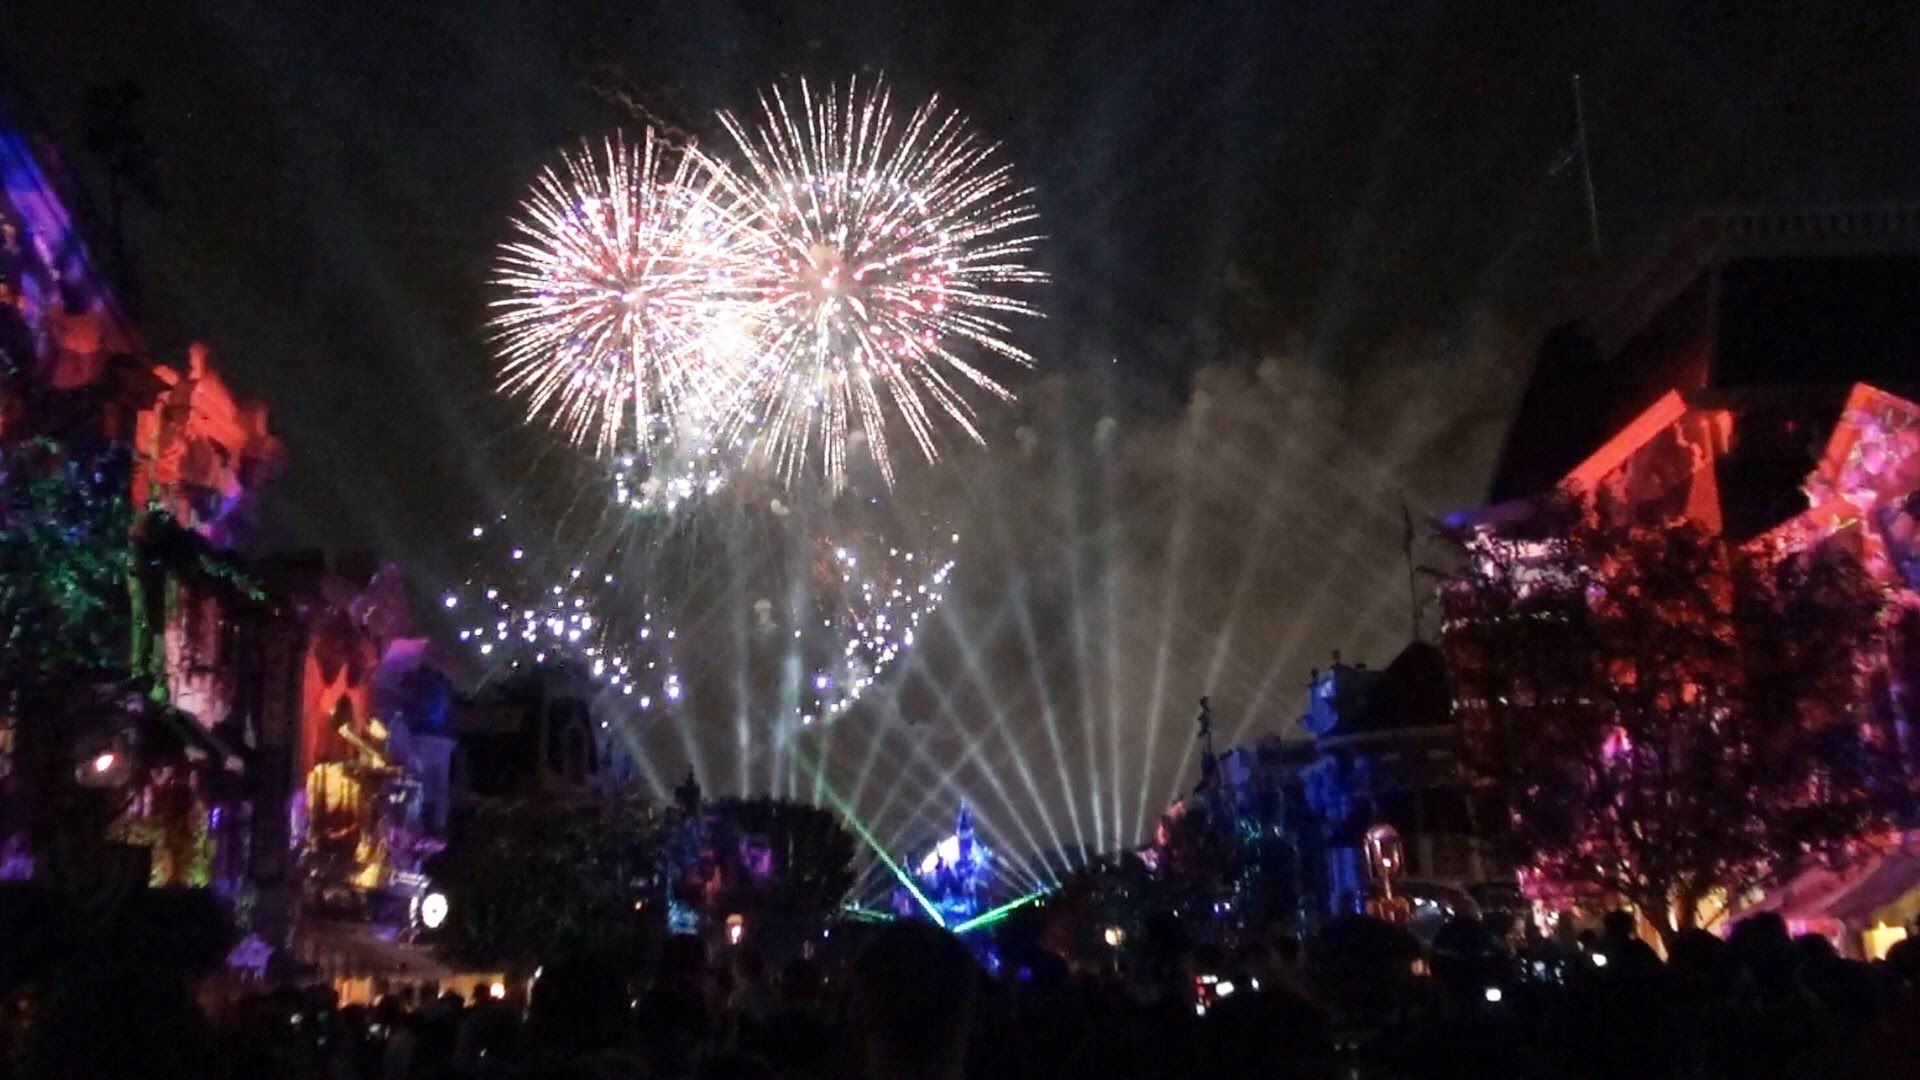 1920x1080 Video: Disneyland Forever Fireworks, Full Show for Disneyland's 60th  celebration. #disneyland #disneyland60 #disney #disneylandforever